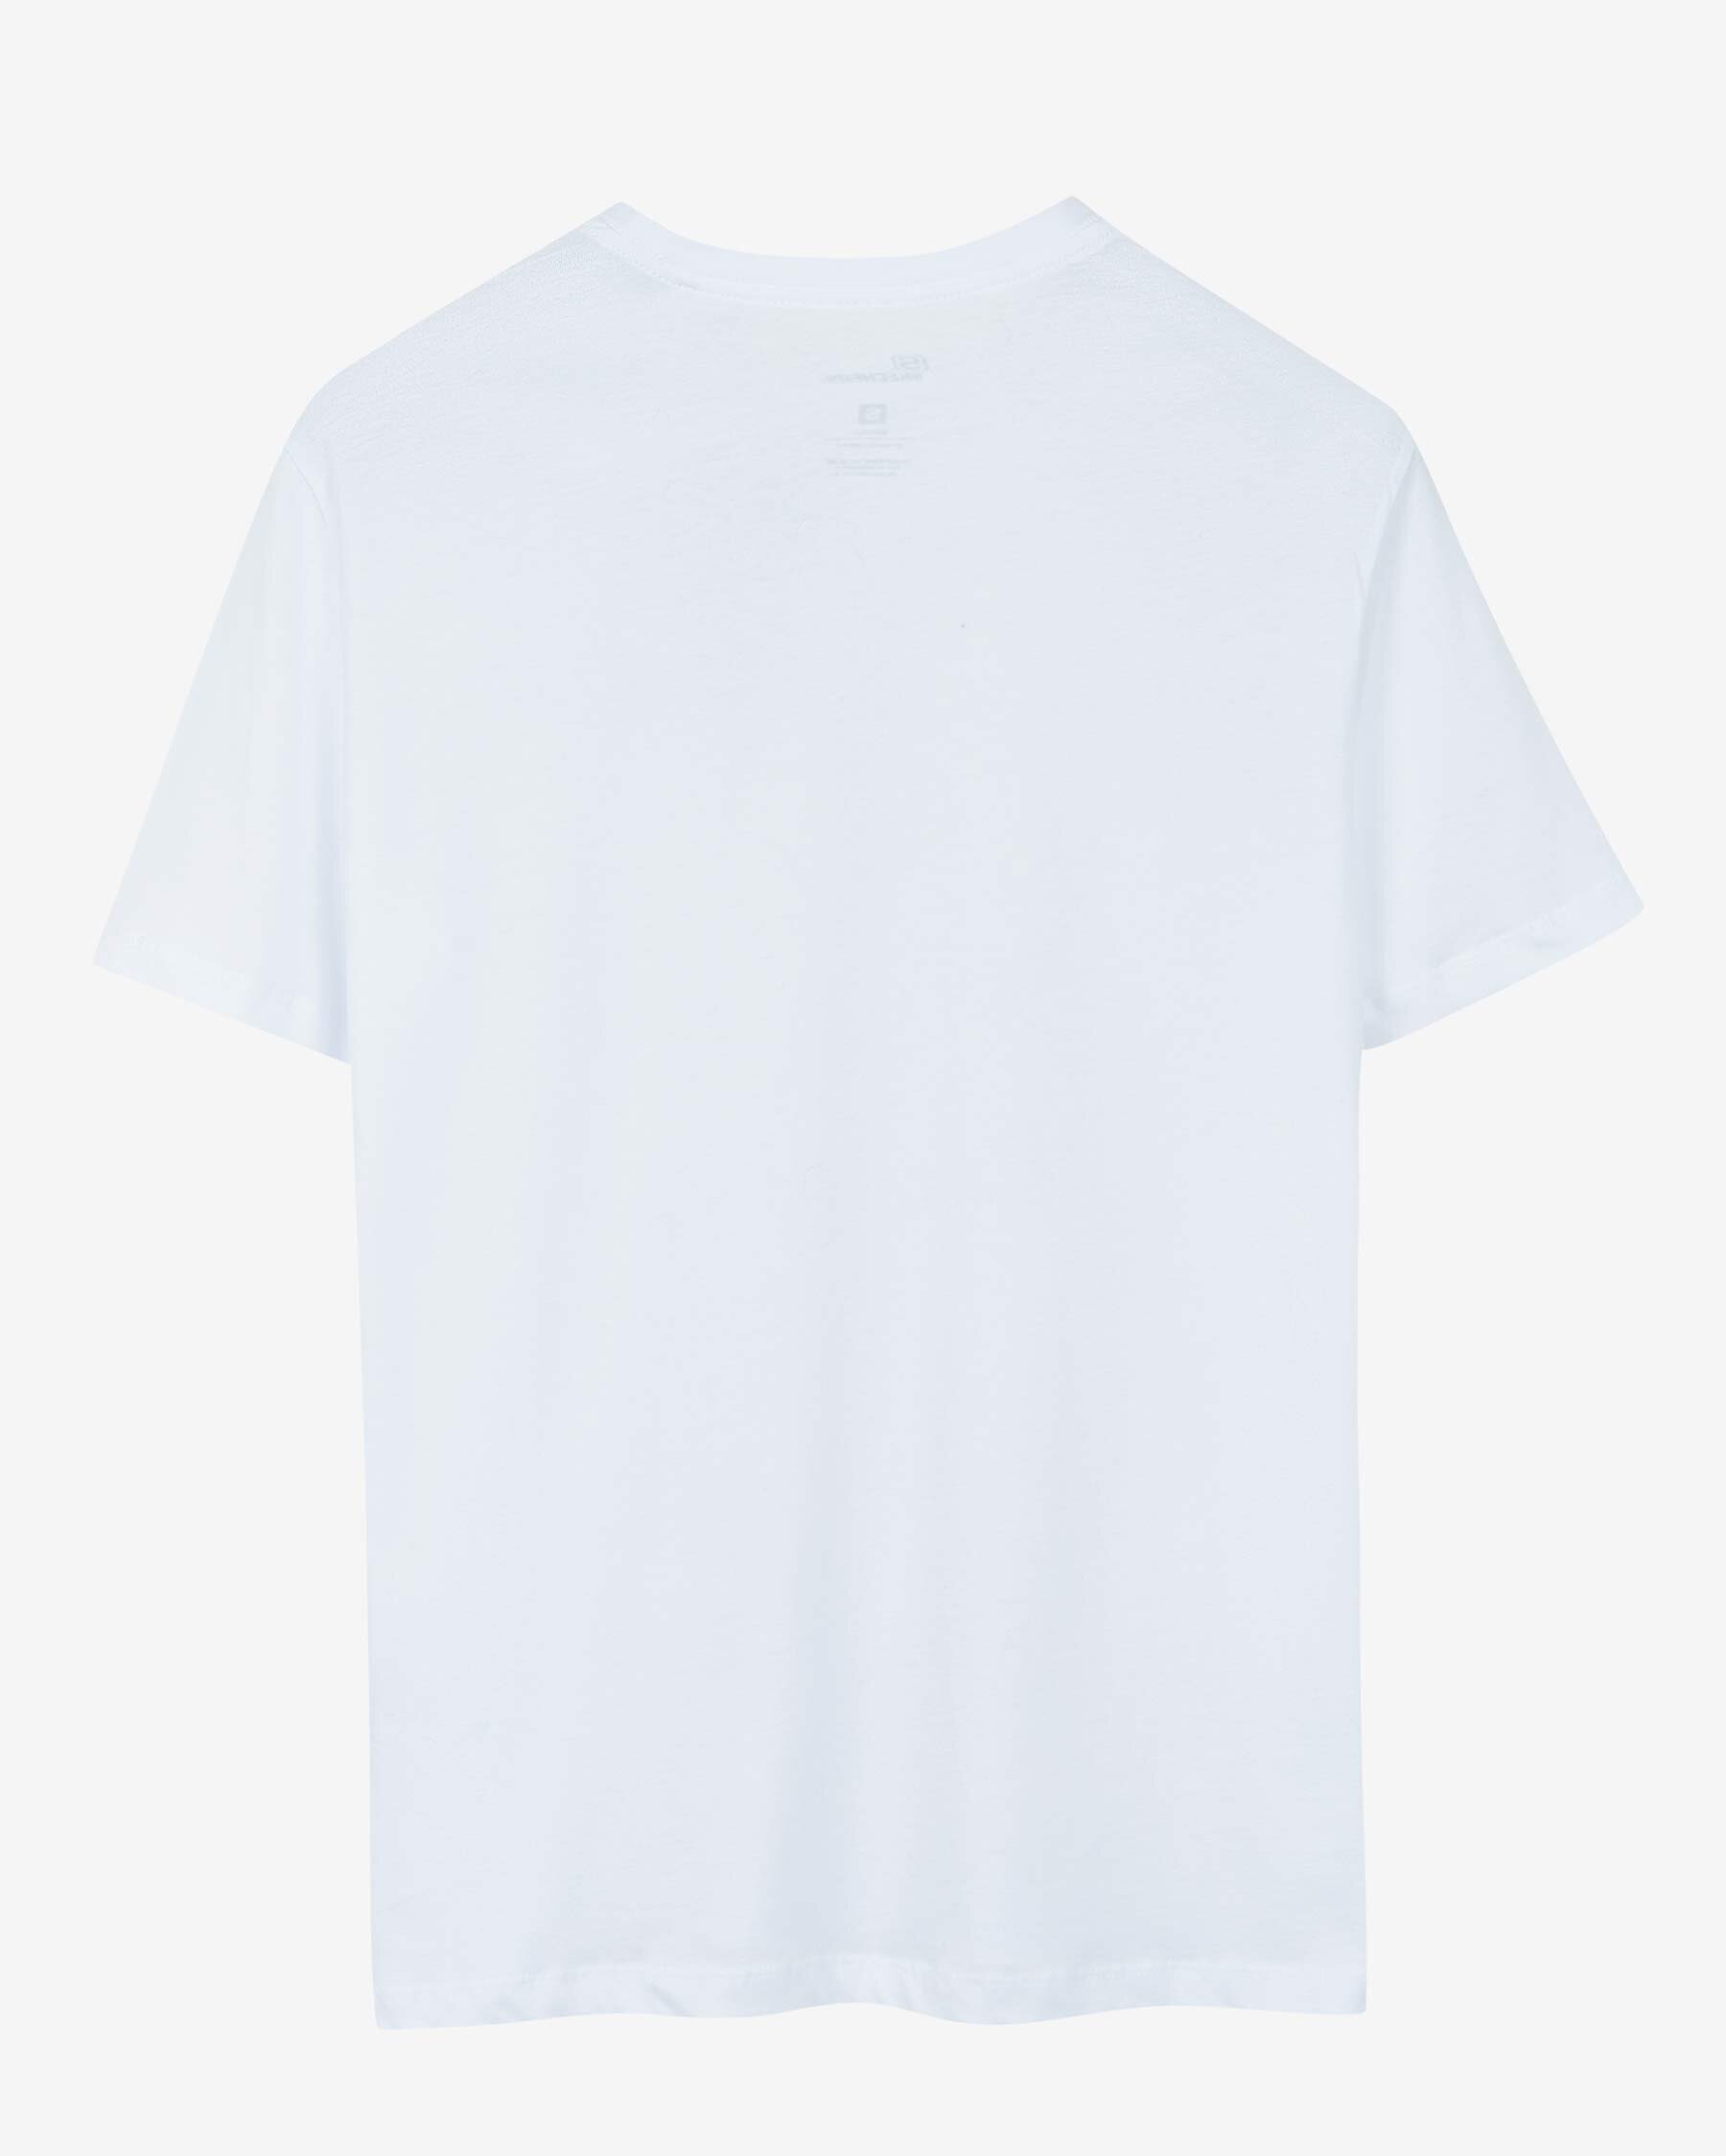 Skechers New Basics Crew Beyaz Tişört (S212910-102)